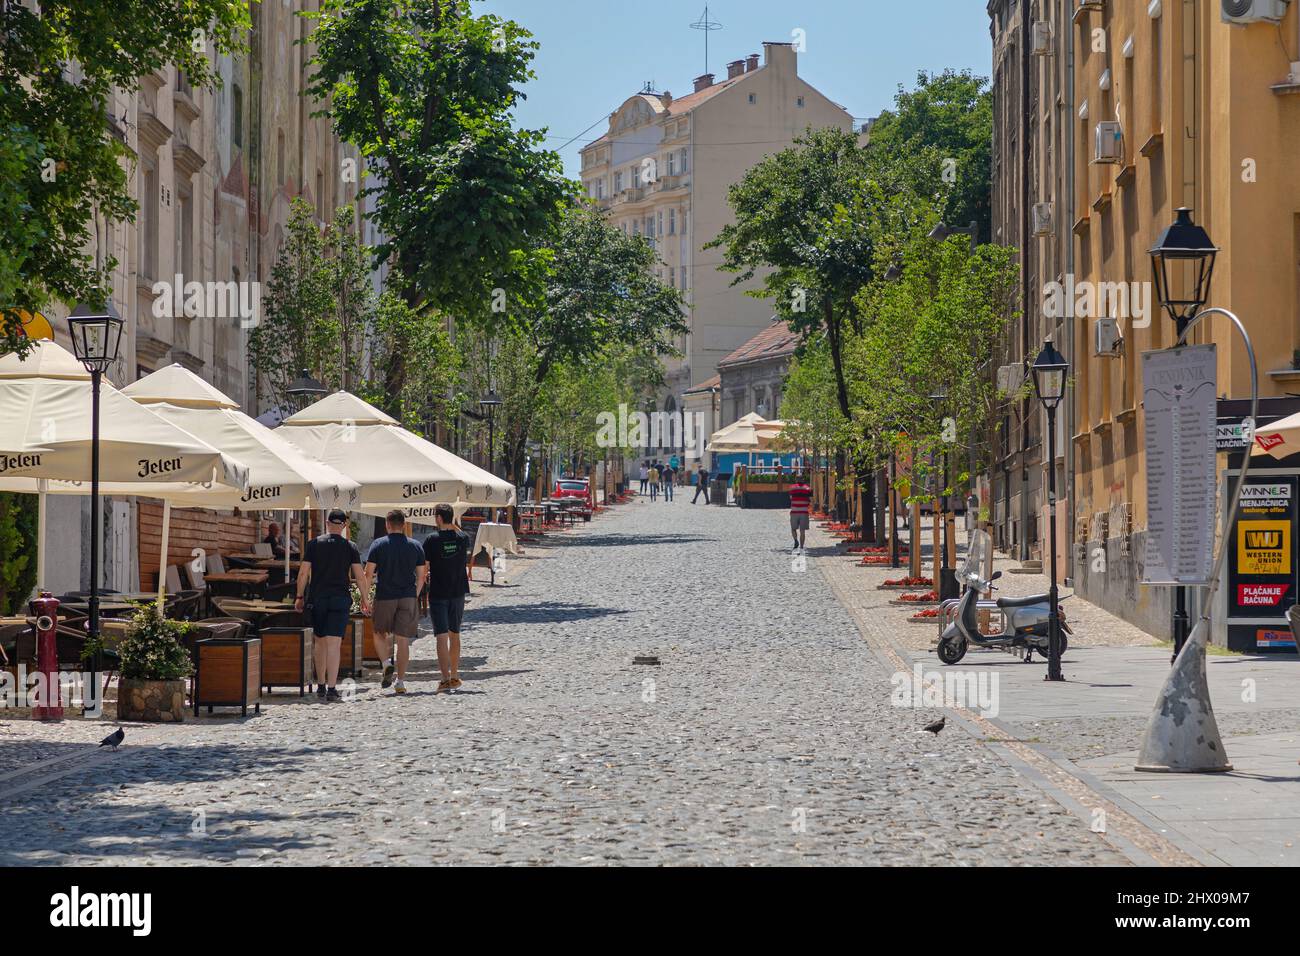 Belgrade, Serbia - July 08, 2021: Empty Skadarlija Cobblestones Street at Hot Summer Day. Stock Photo